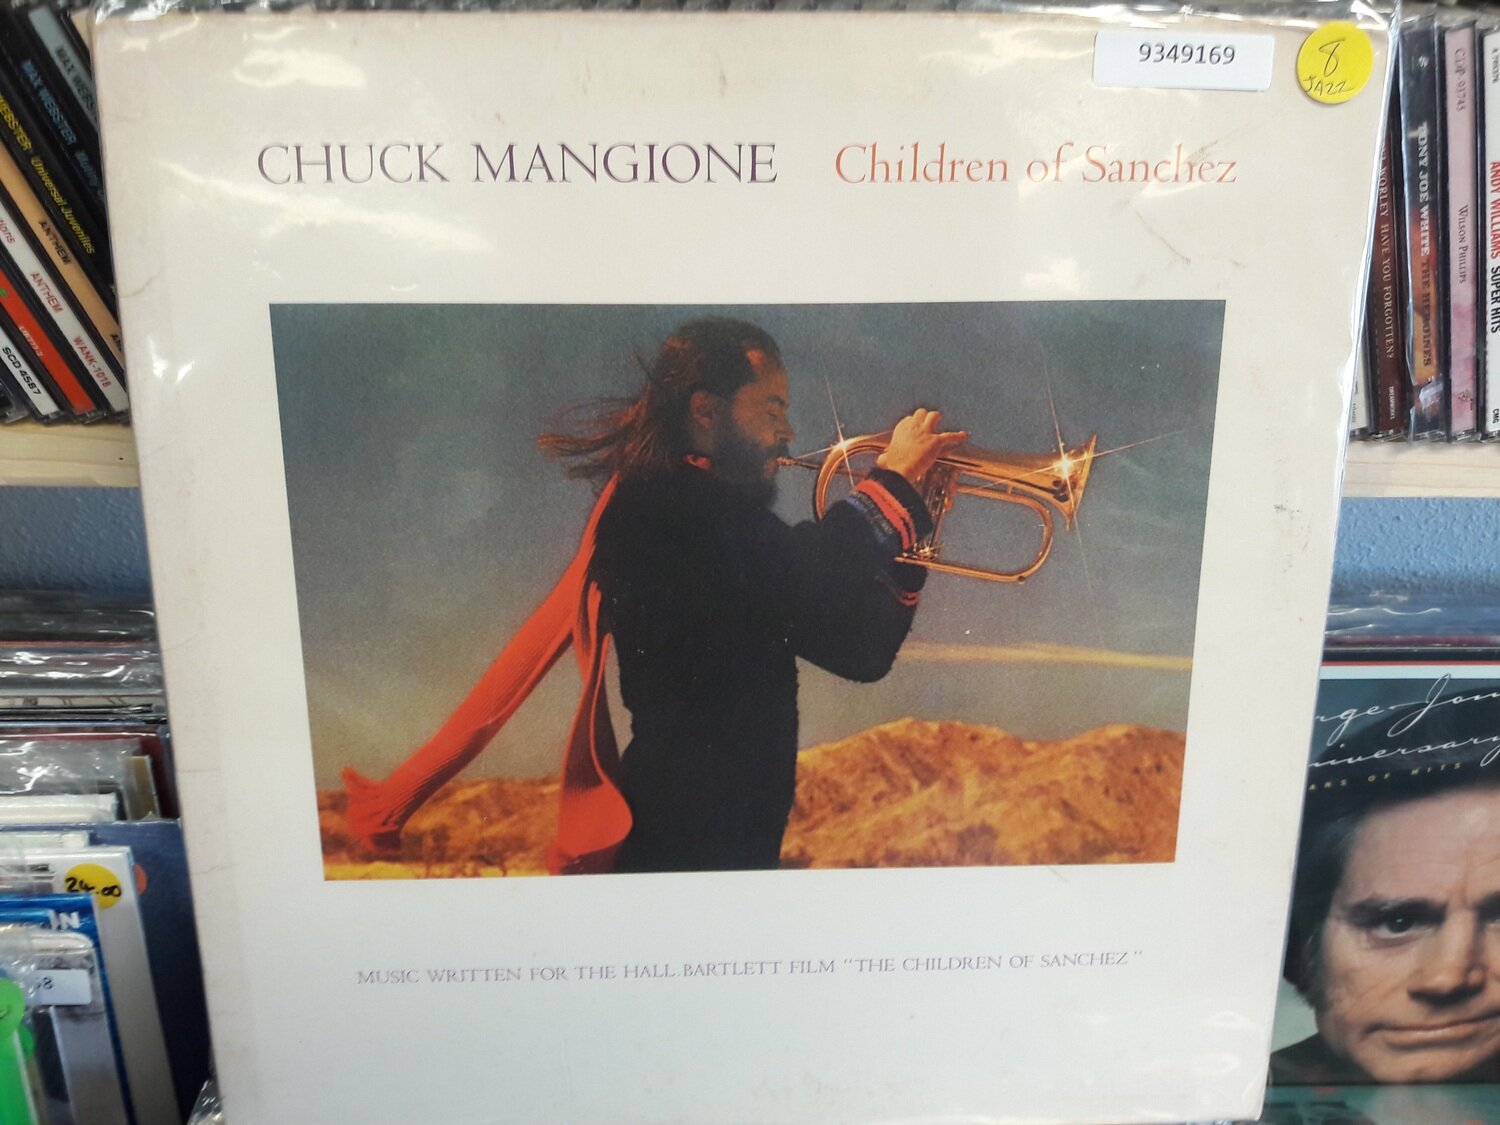 Mangione, Chuck - Children of Sanchez